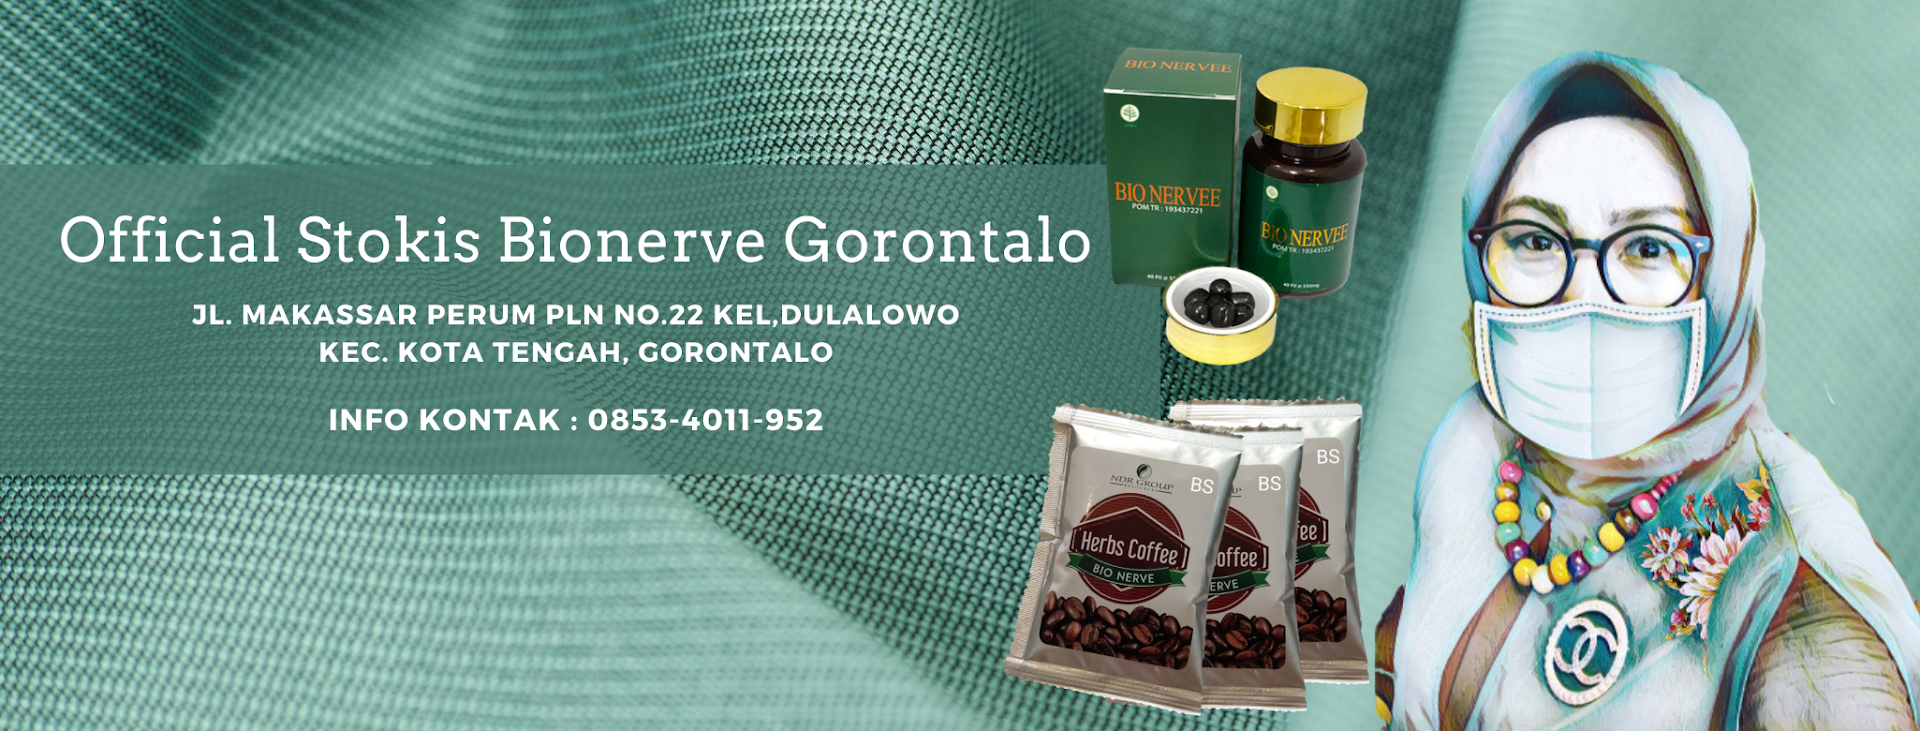 Official Store Bio Nervee Gorontalo Photo